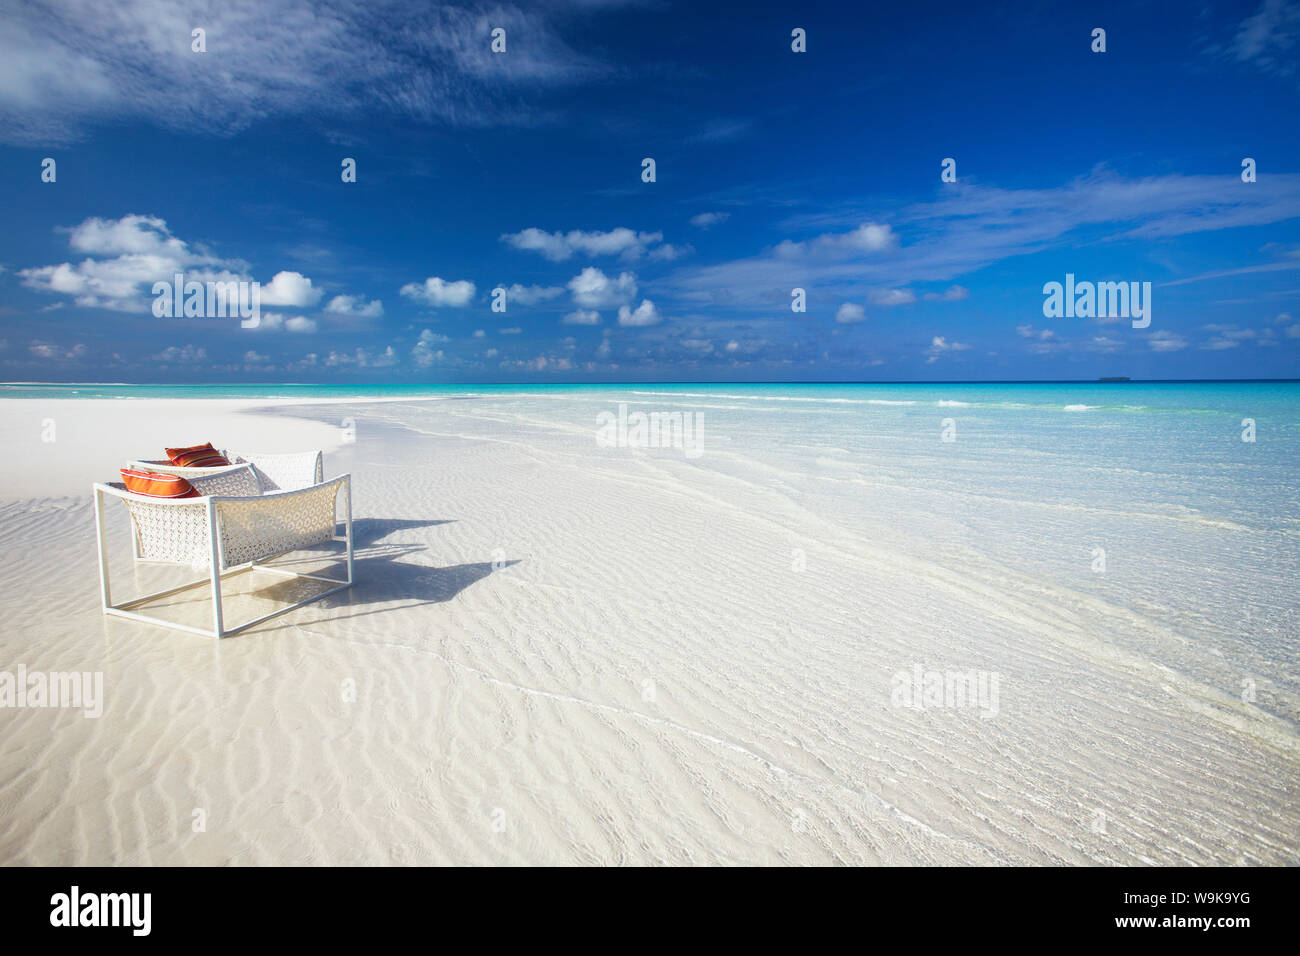 Sedie a sdraio sulla spiaggia tropicale, Maldive, Oceano Indiano, Asia Foto Stock